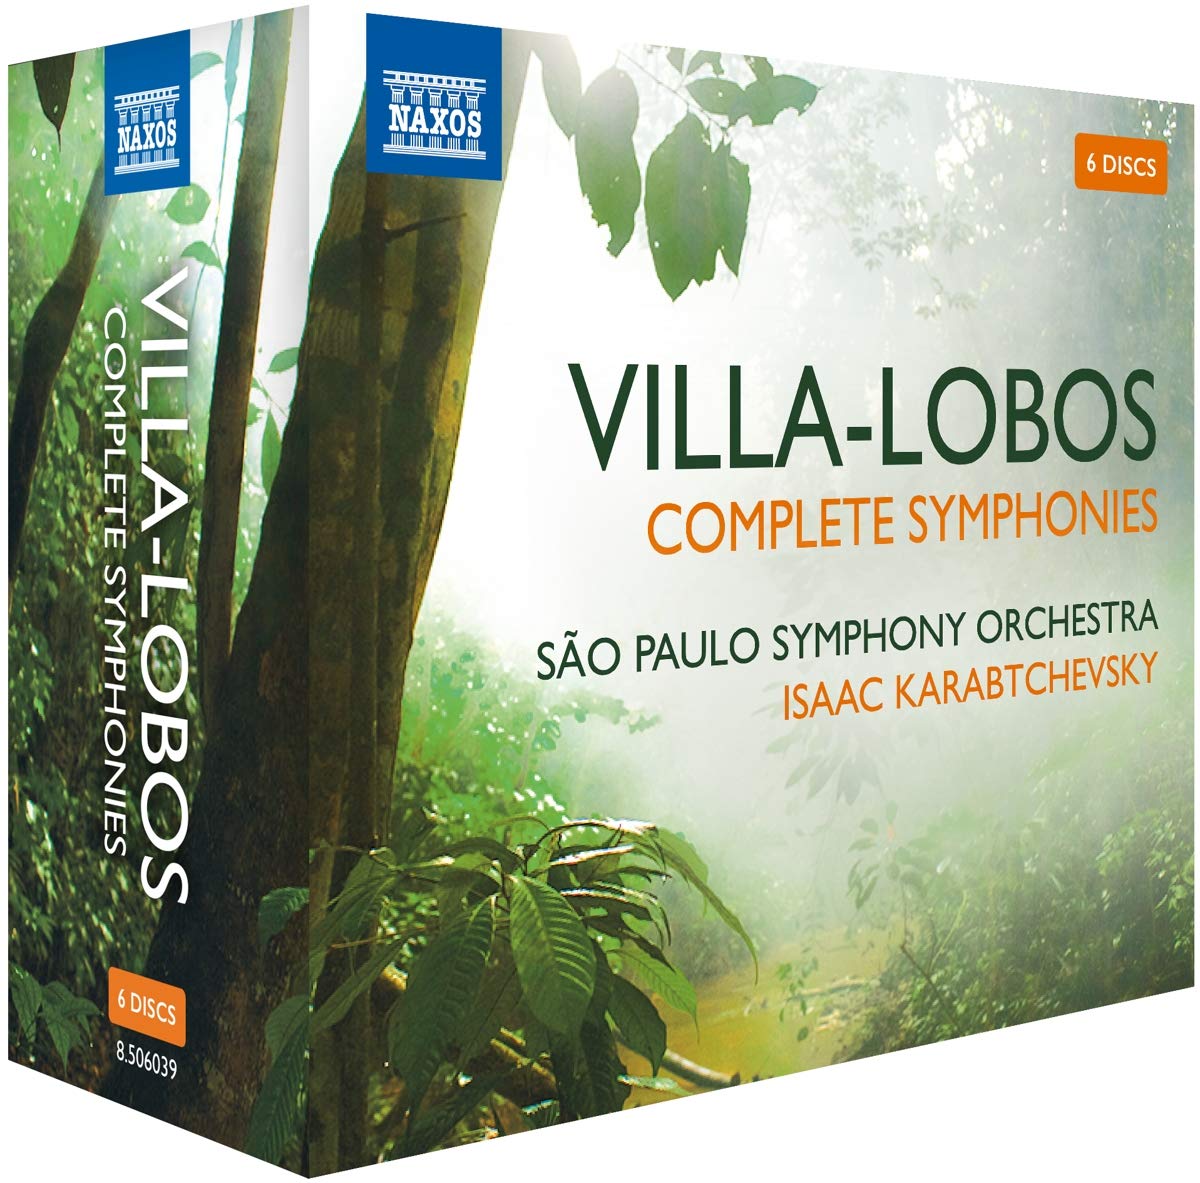 Audio Cd Heitor Villa-Lobos - Complete Symphonies (6 Cd) NUOVO SIGILLATO, EDIZIONE DEL 25/09/2020 SUBITO DISPONIBILE